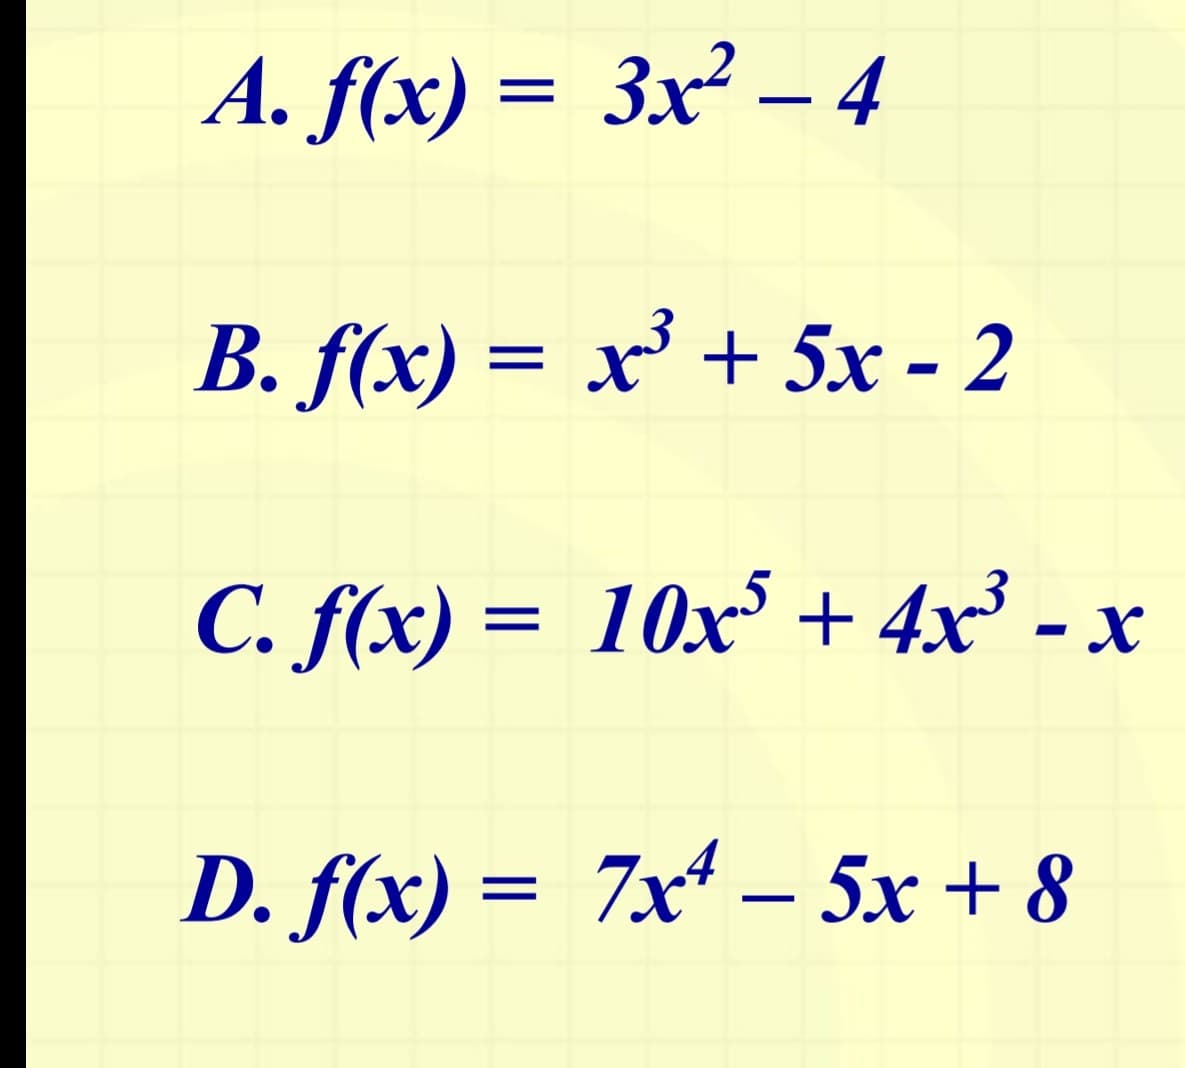 A. f(x)= 3x² - 4
B. f(x) = x³ + 5x - 2
C. f(x) = 10x³+4x³ -
x
D. f(x) = 7x4-5x+8